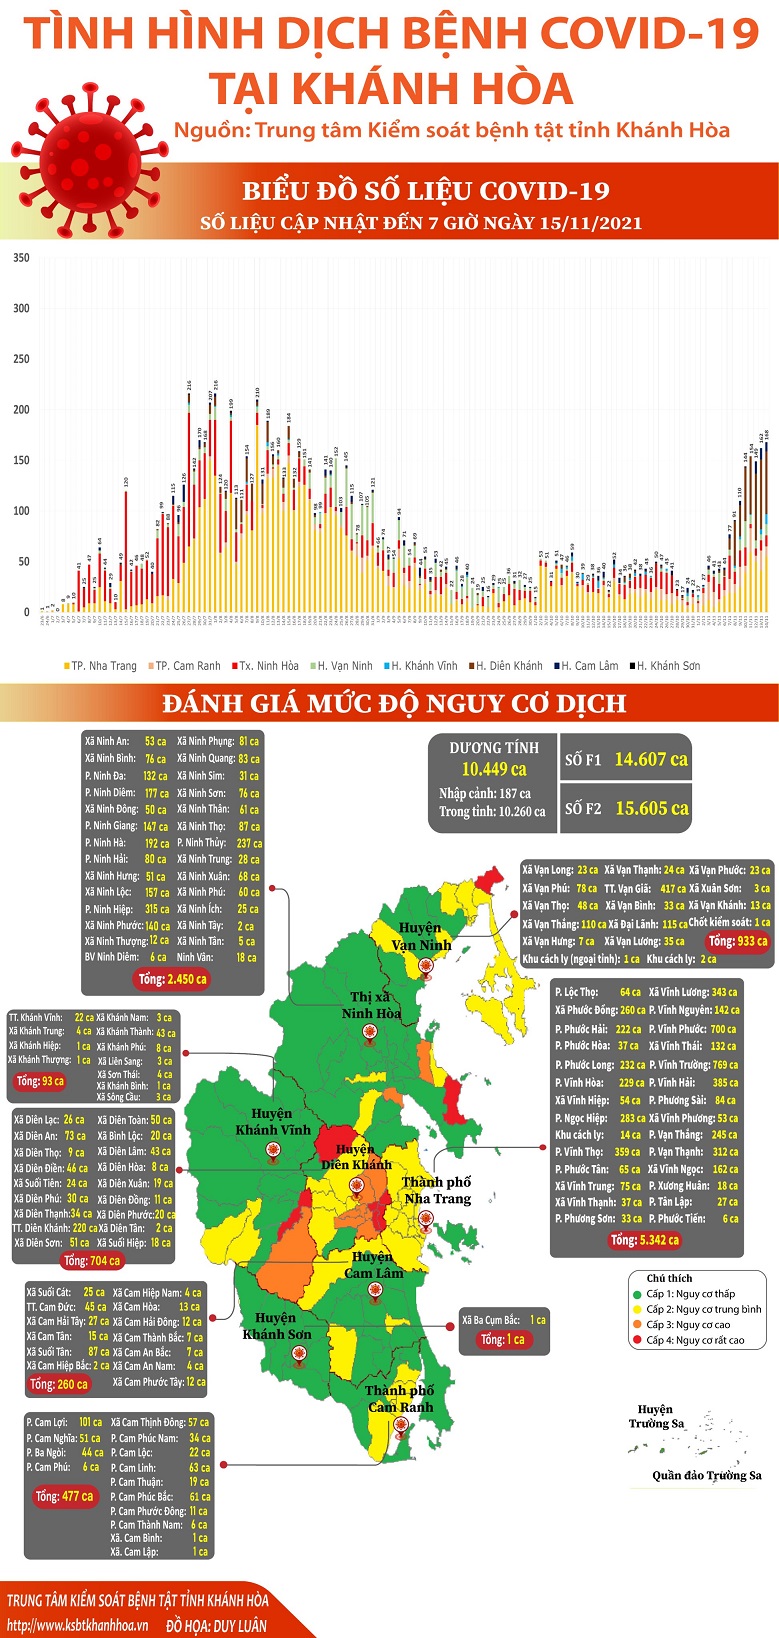 Biểu đồ tình hình dịch bệnh COVID-19 tại Khánh Hòa (Số liệu cập nhật đến 07 giờ 00 ngày 15/11/2021)